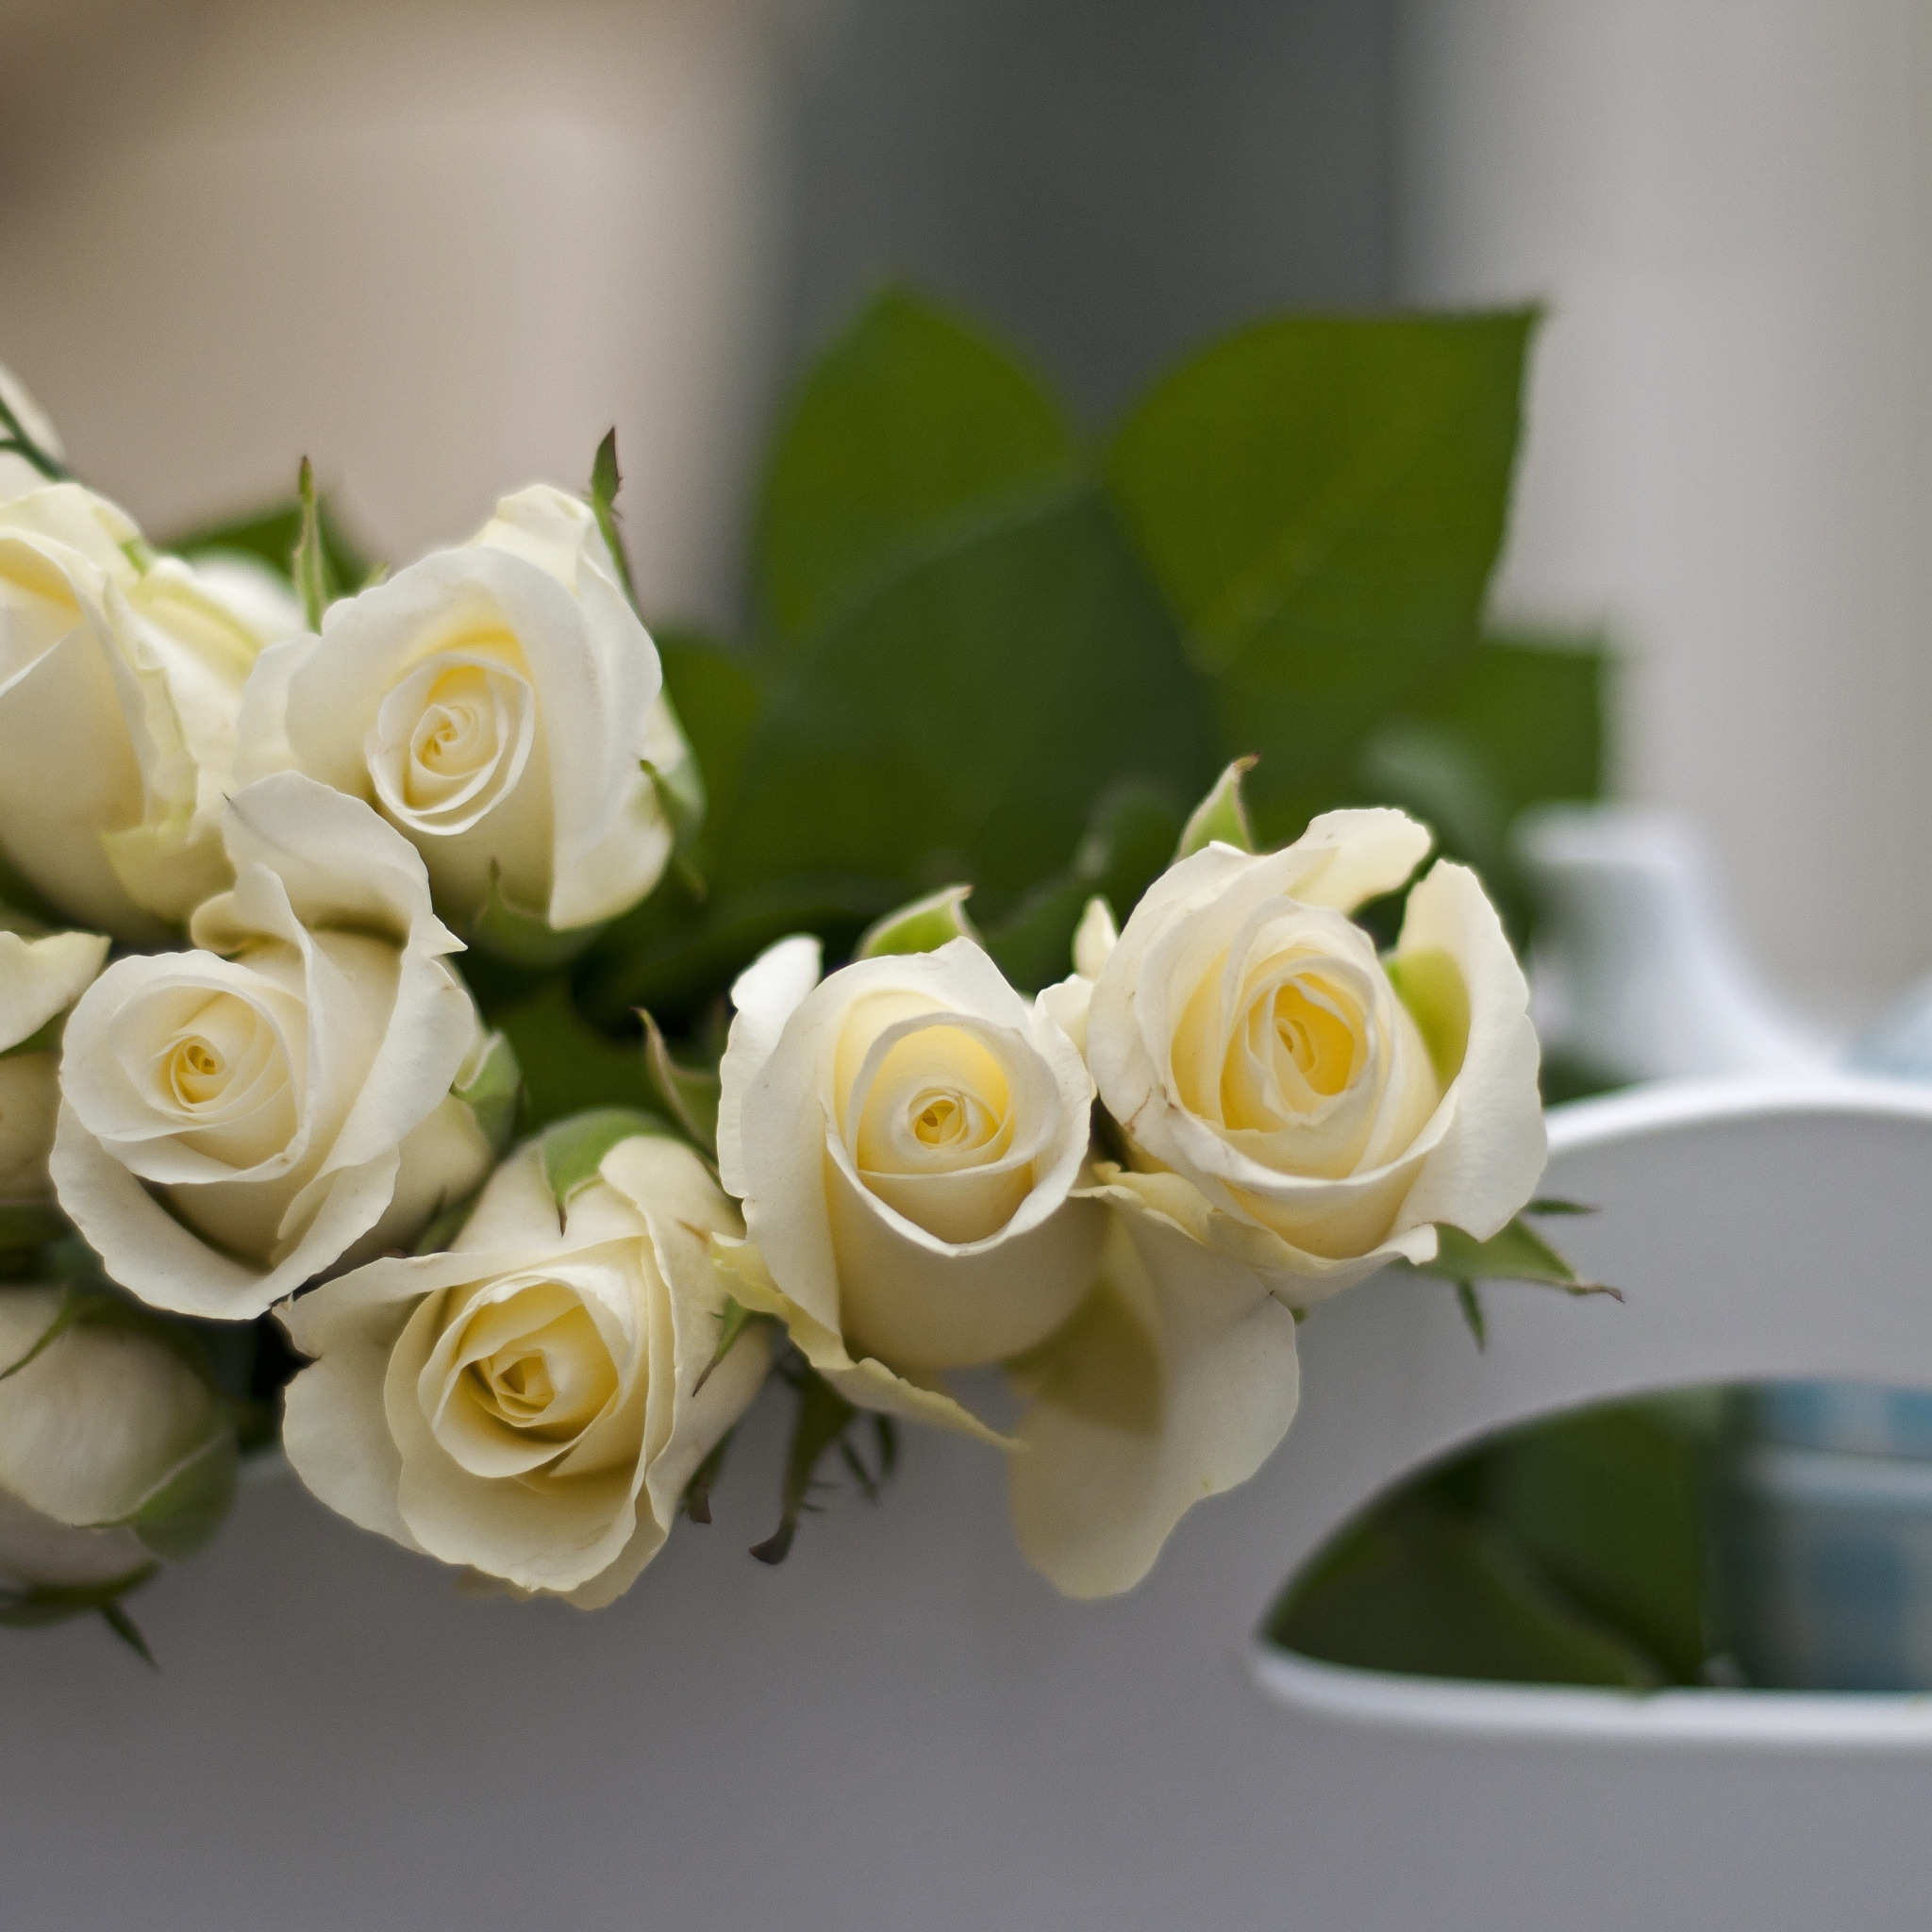 Пожелание доброго утра любимой женщине в картинках. Белые цветы. С добрым утром девушке. Пожелания с добрым утром любимой девушке. Букет белых роз на столе.